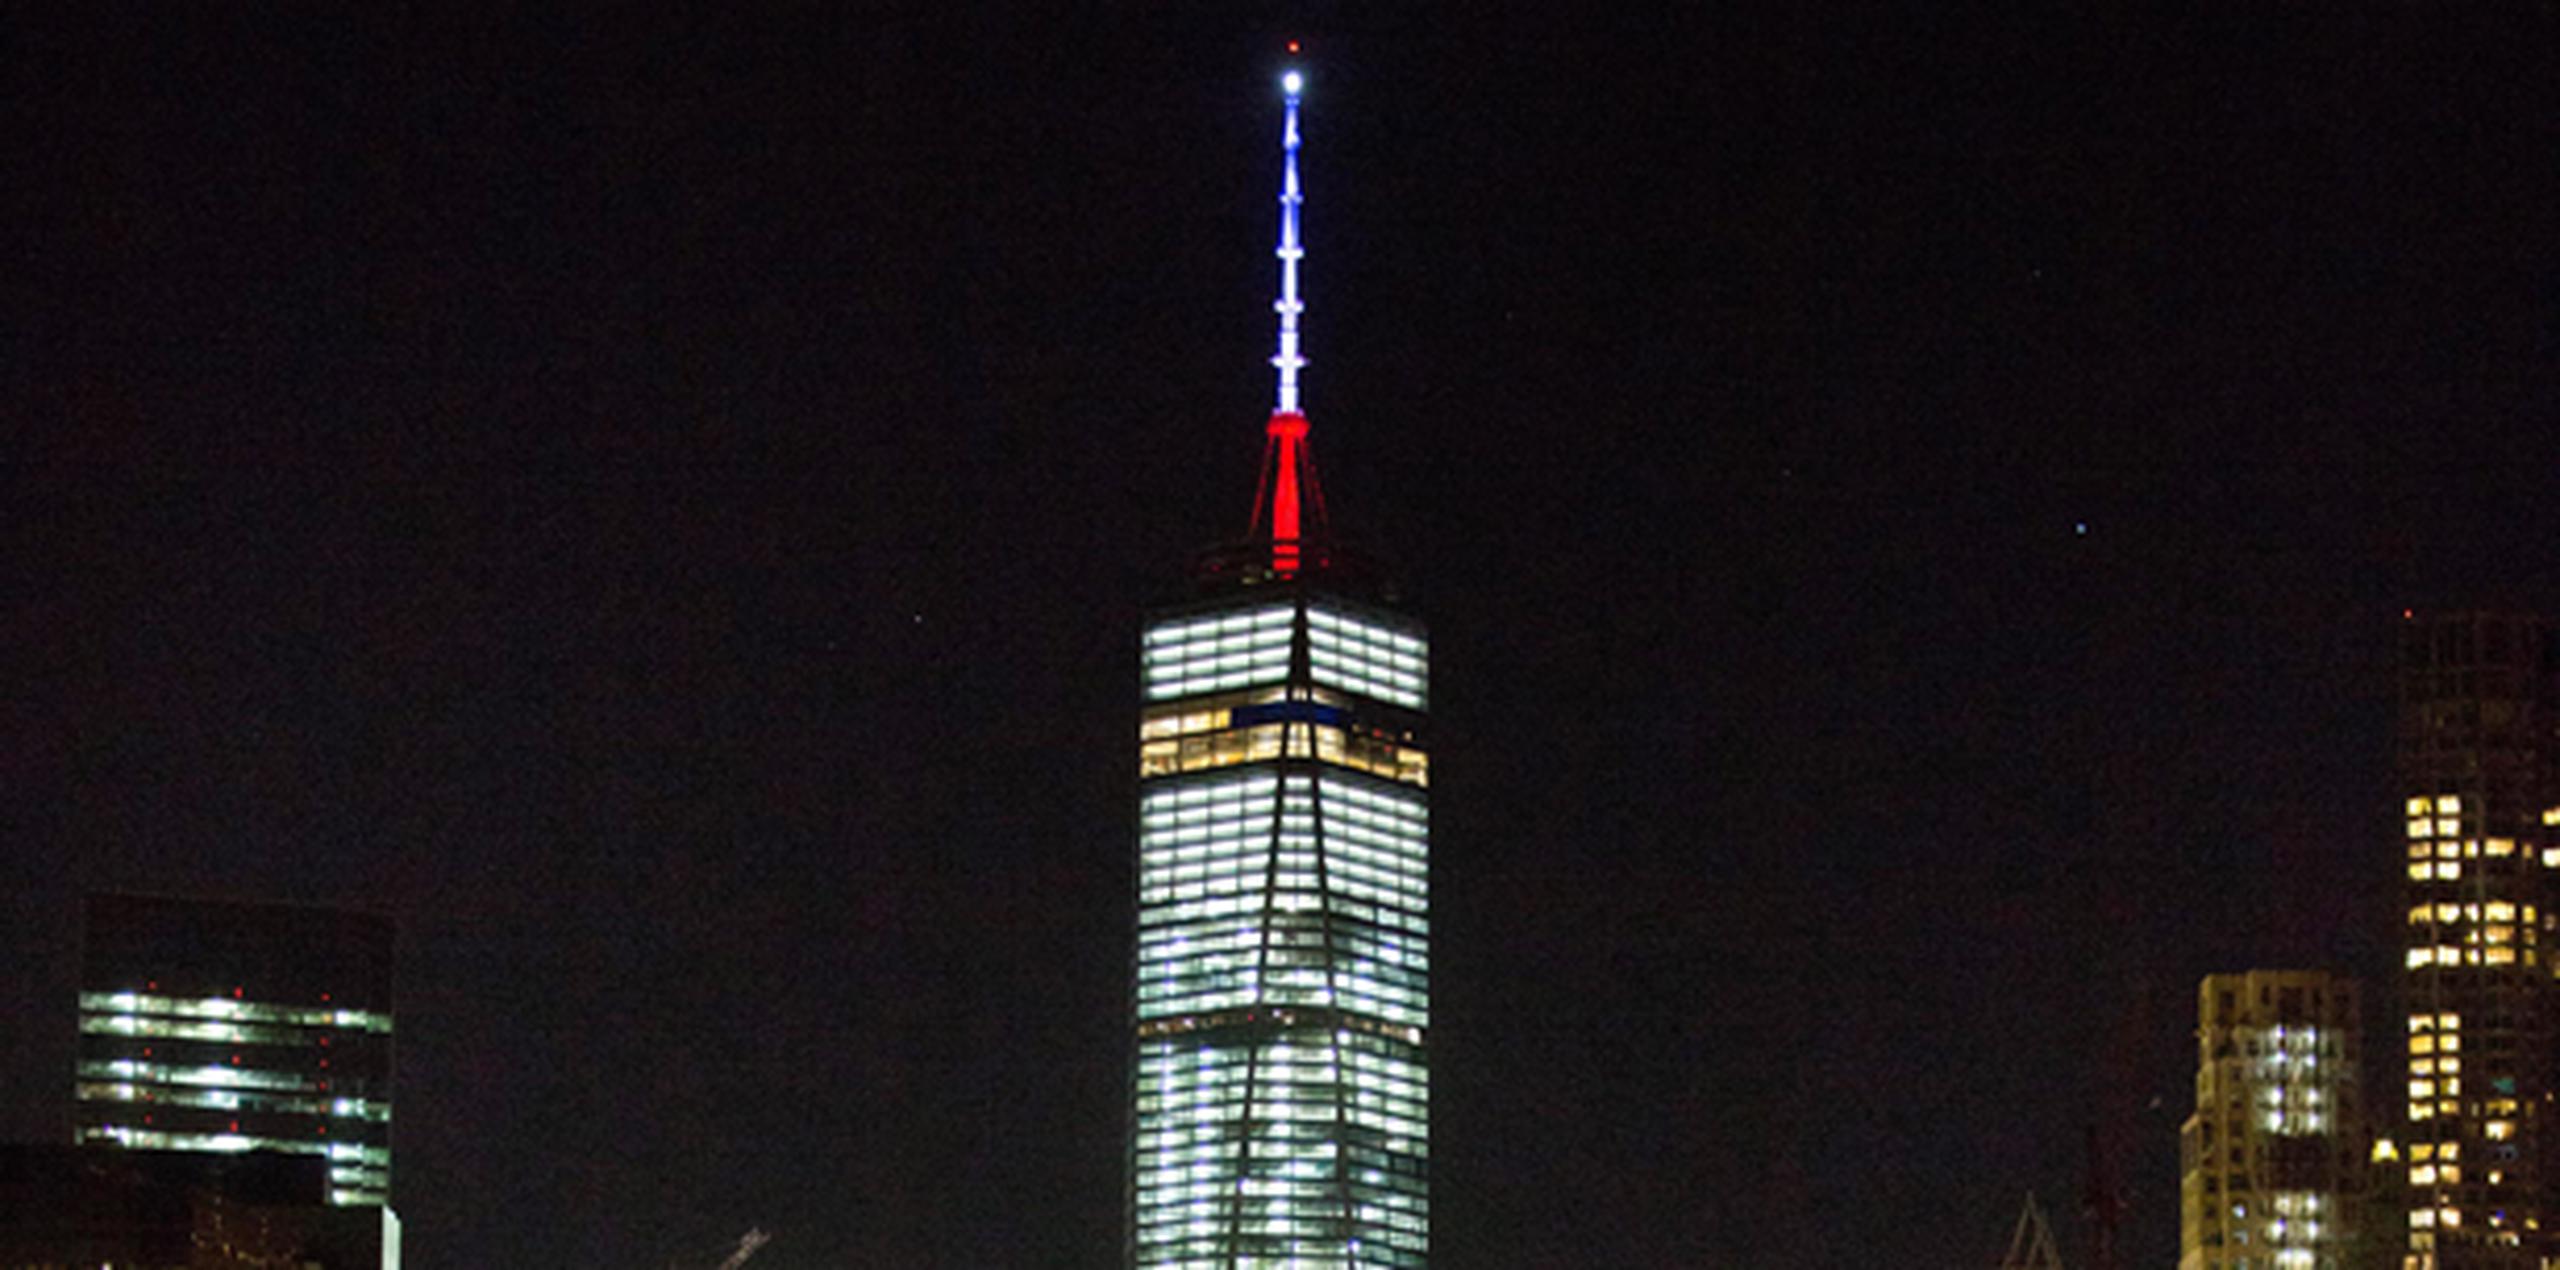 El One World Trade Center, también conocido como la torre de la libertad y que se erige en la zona donde se encontraban las Torres Gemelas, derribadas en los atentados del 11 de septiembre de 2001, realizó así un homenaje a París. (AP Photo/Kevin Hagen)
